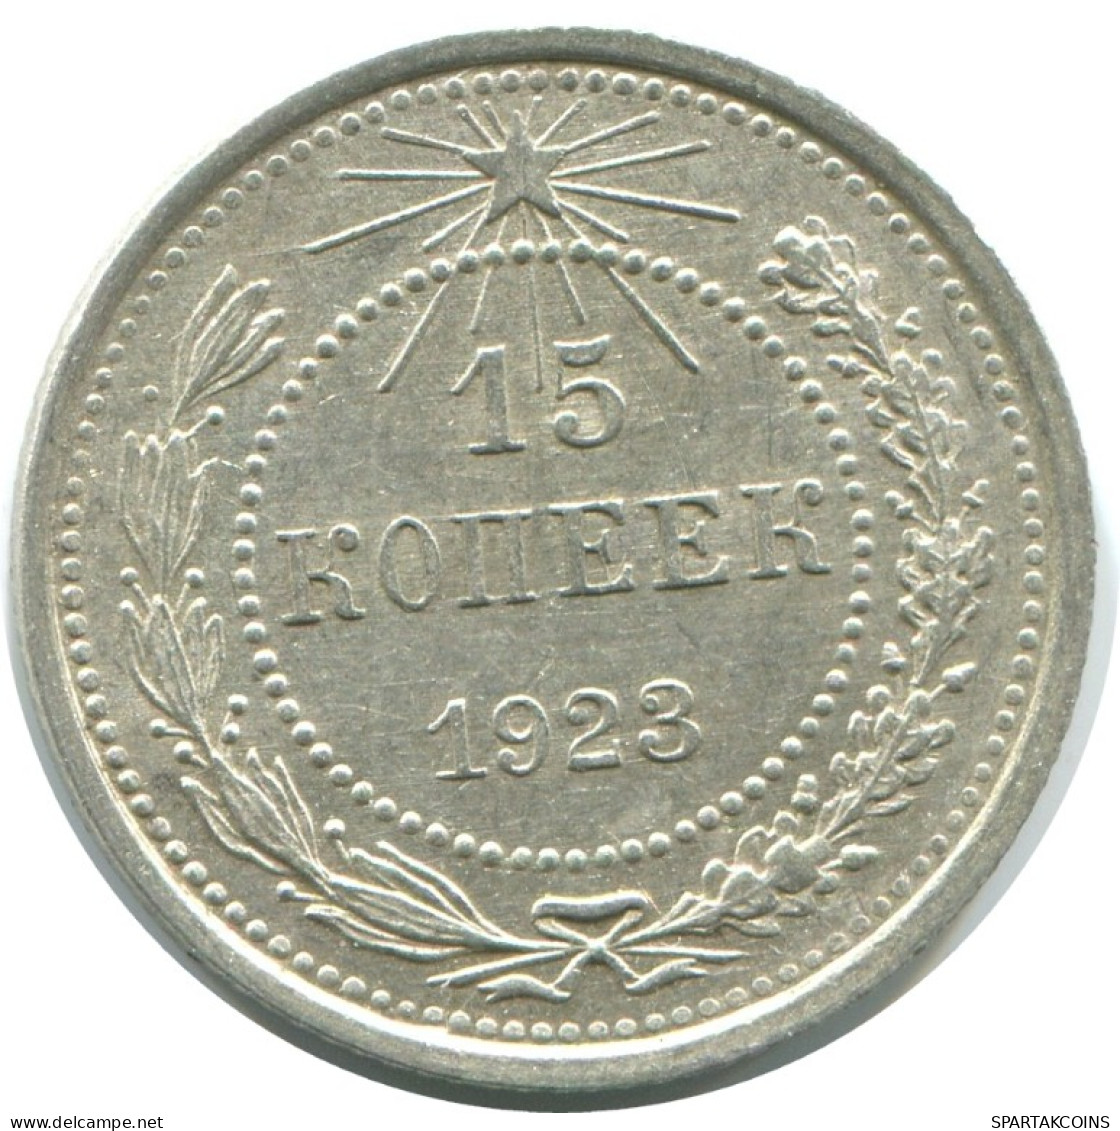 15 KOPEKS 1923 RUSSLAND RUSSIA RSFSR SILBER Münze HIGH GRADE #AF060.4.D.A - Rusia